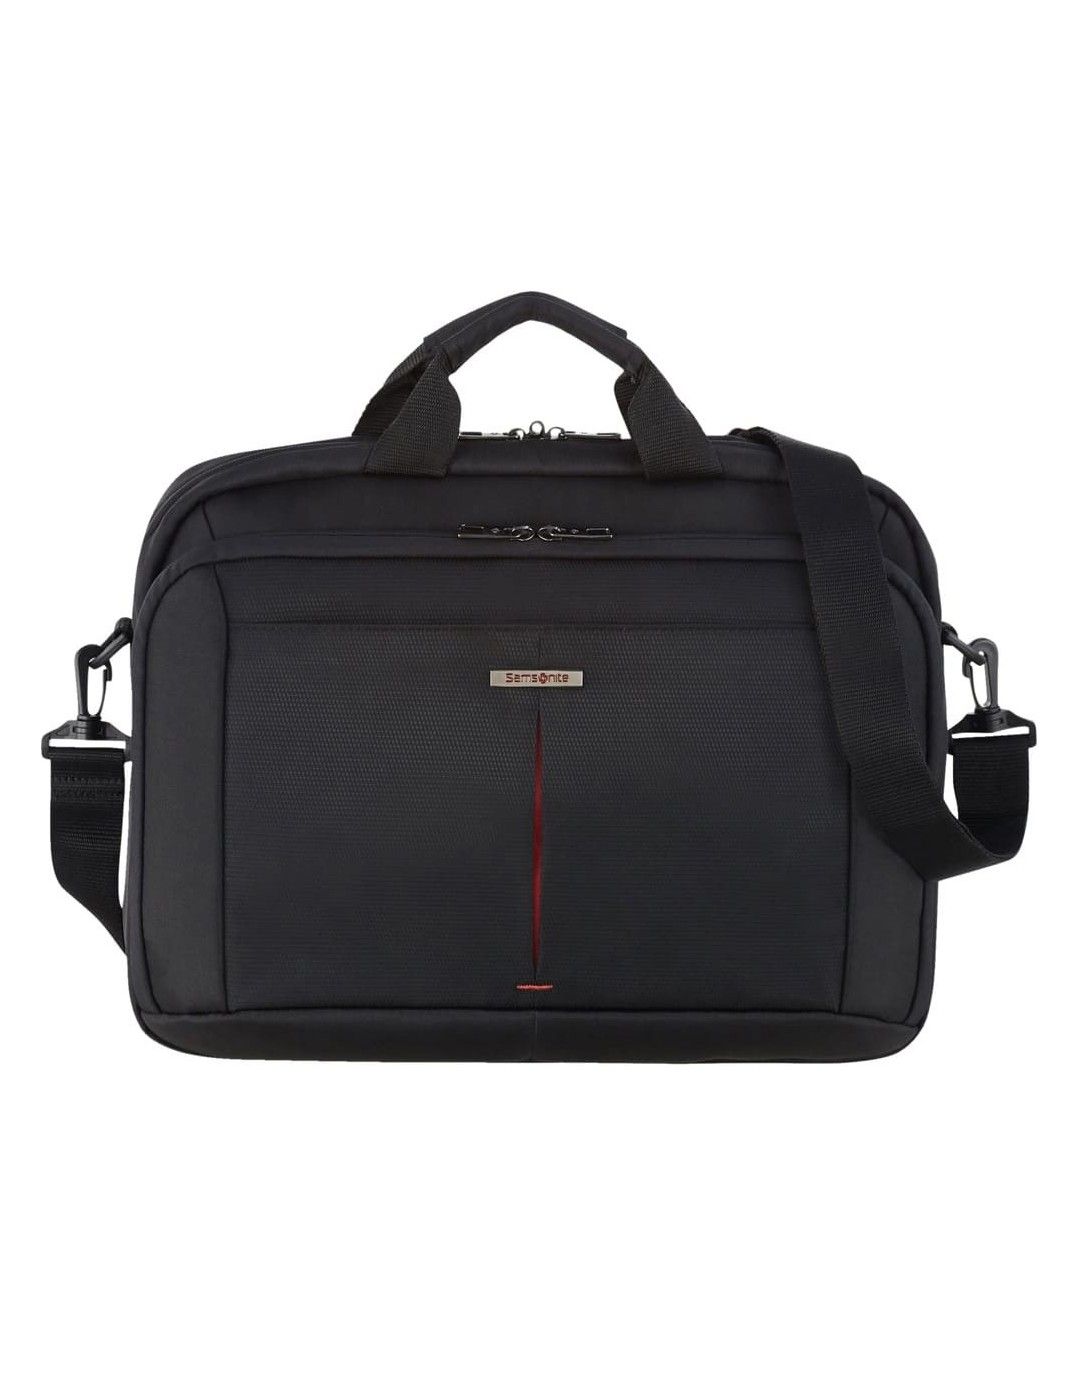 Samsonite Guardit 2.0 briefcase 15.6 inches